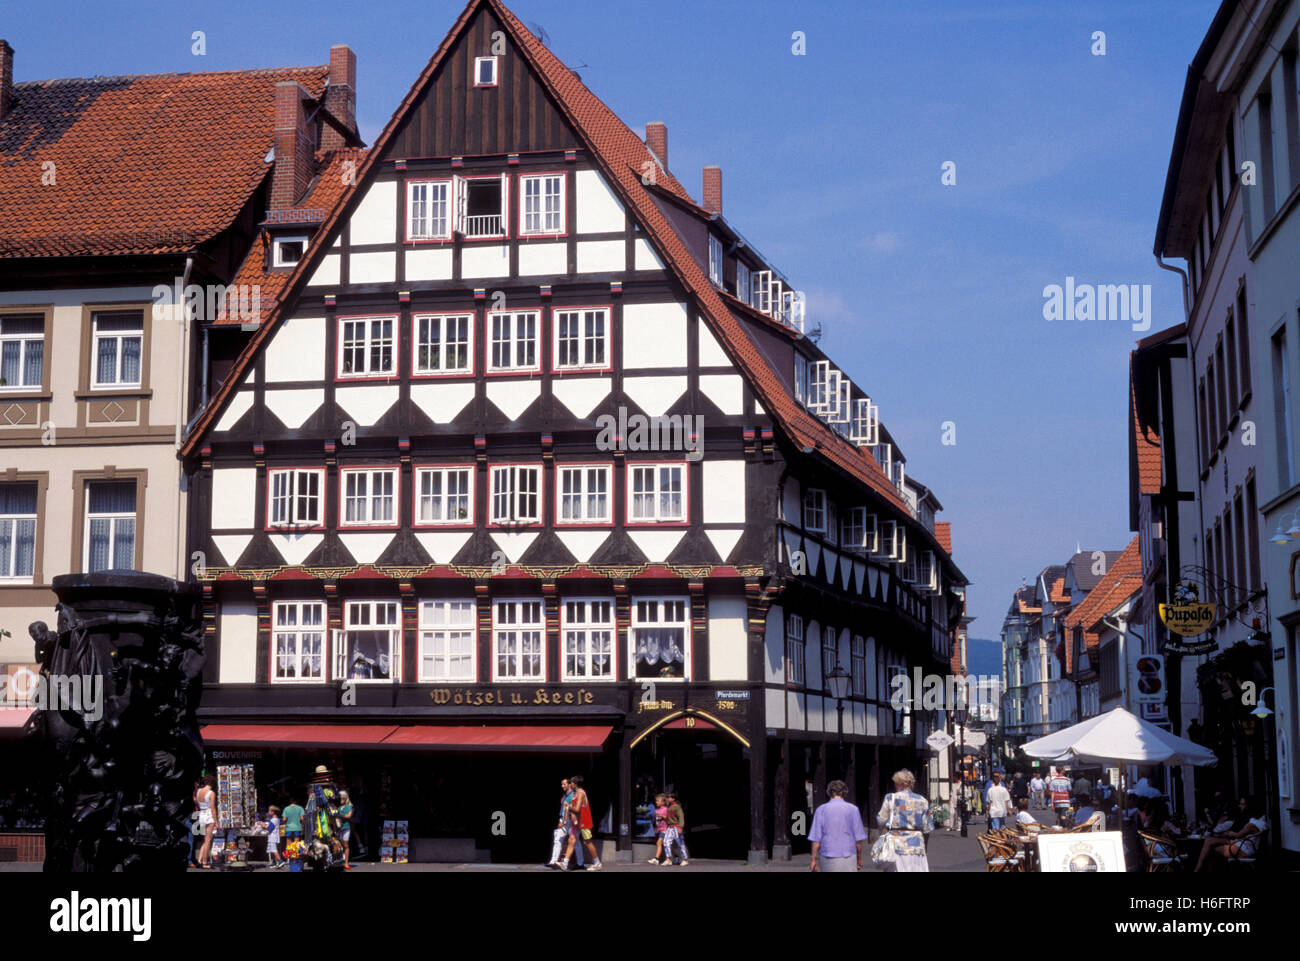 Allemagne, Basse-Saxe, Hameln, maison à colombages au marché de chevaux. Banque D'Images